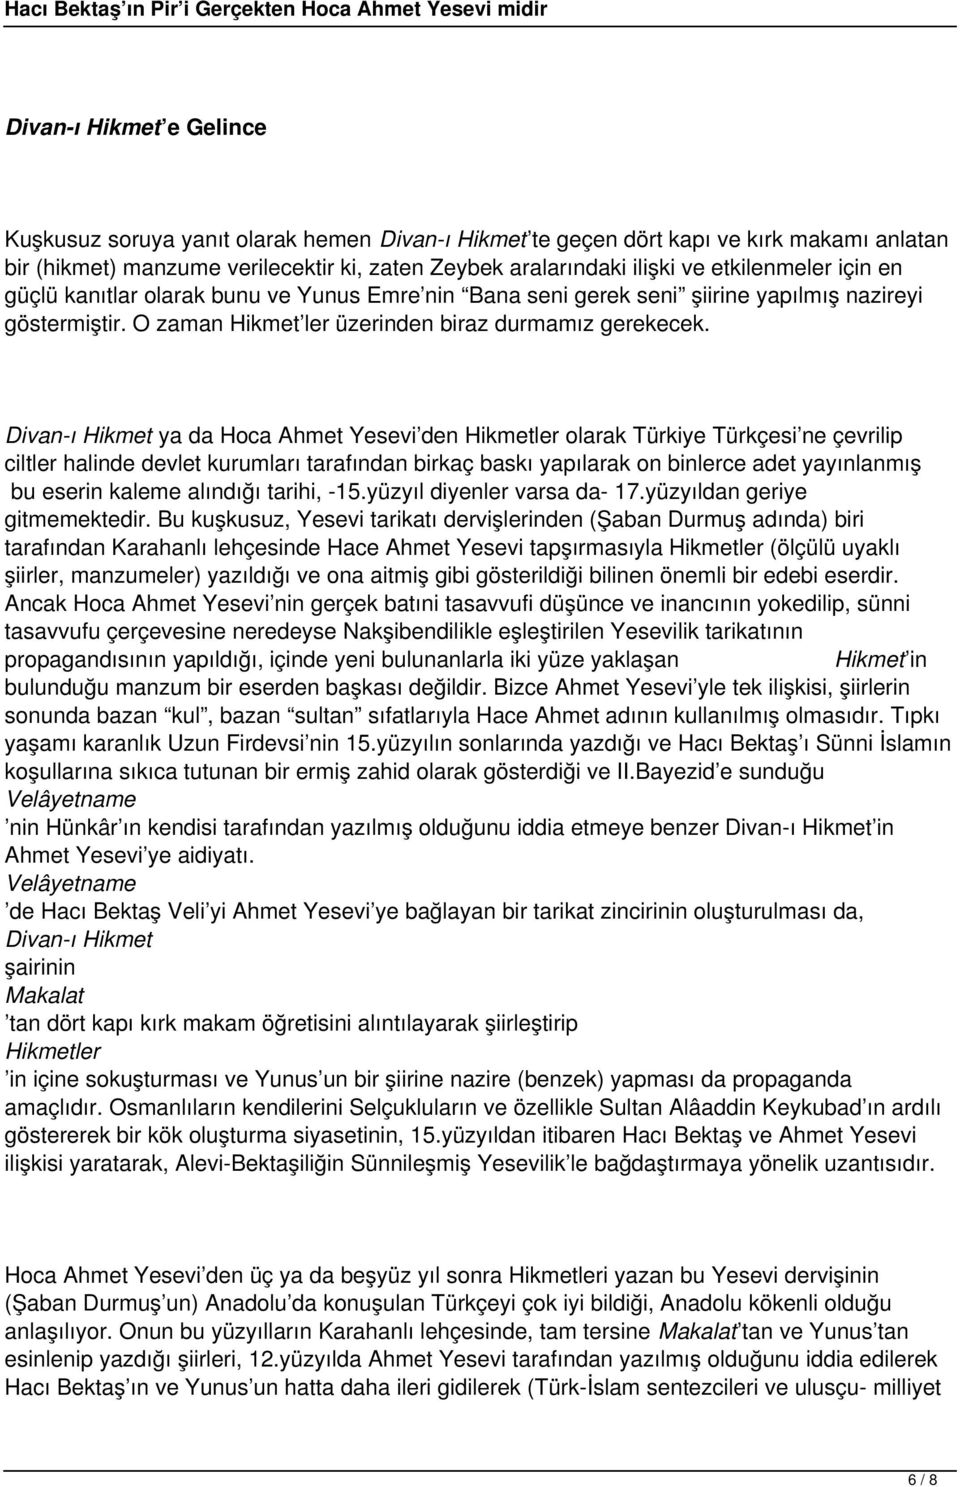 Divan-ı Hikmet ya da Hoca Ahmet Yesevi den Hikmetler olarak Türkiye Türkçesi ne çevrilip ciltler halinde devlet kurumları tarafından birkaç baskı yapılarak on binlerce adet yayınlanmış bu eserin